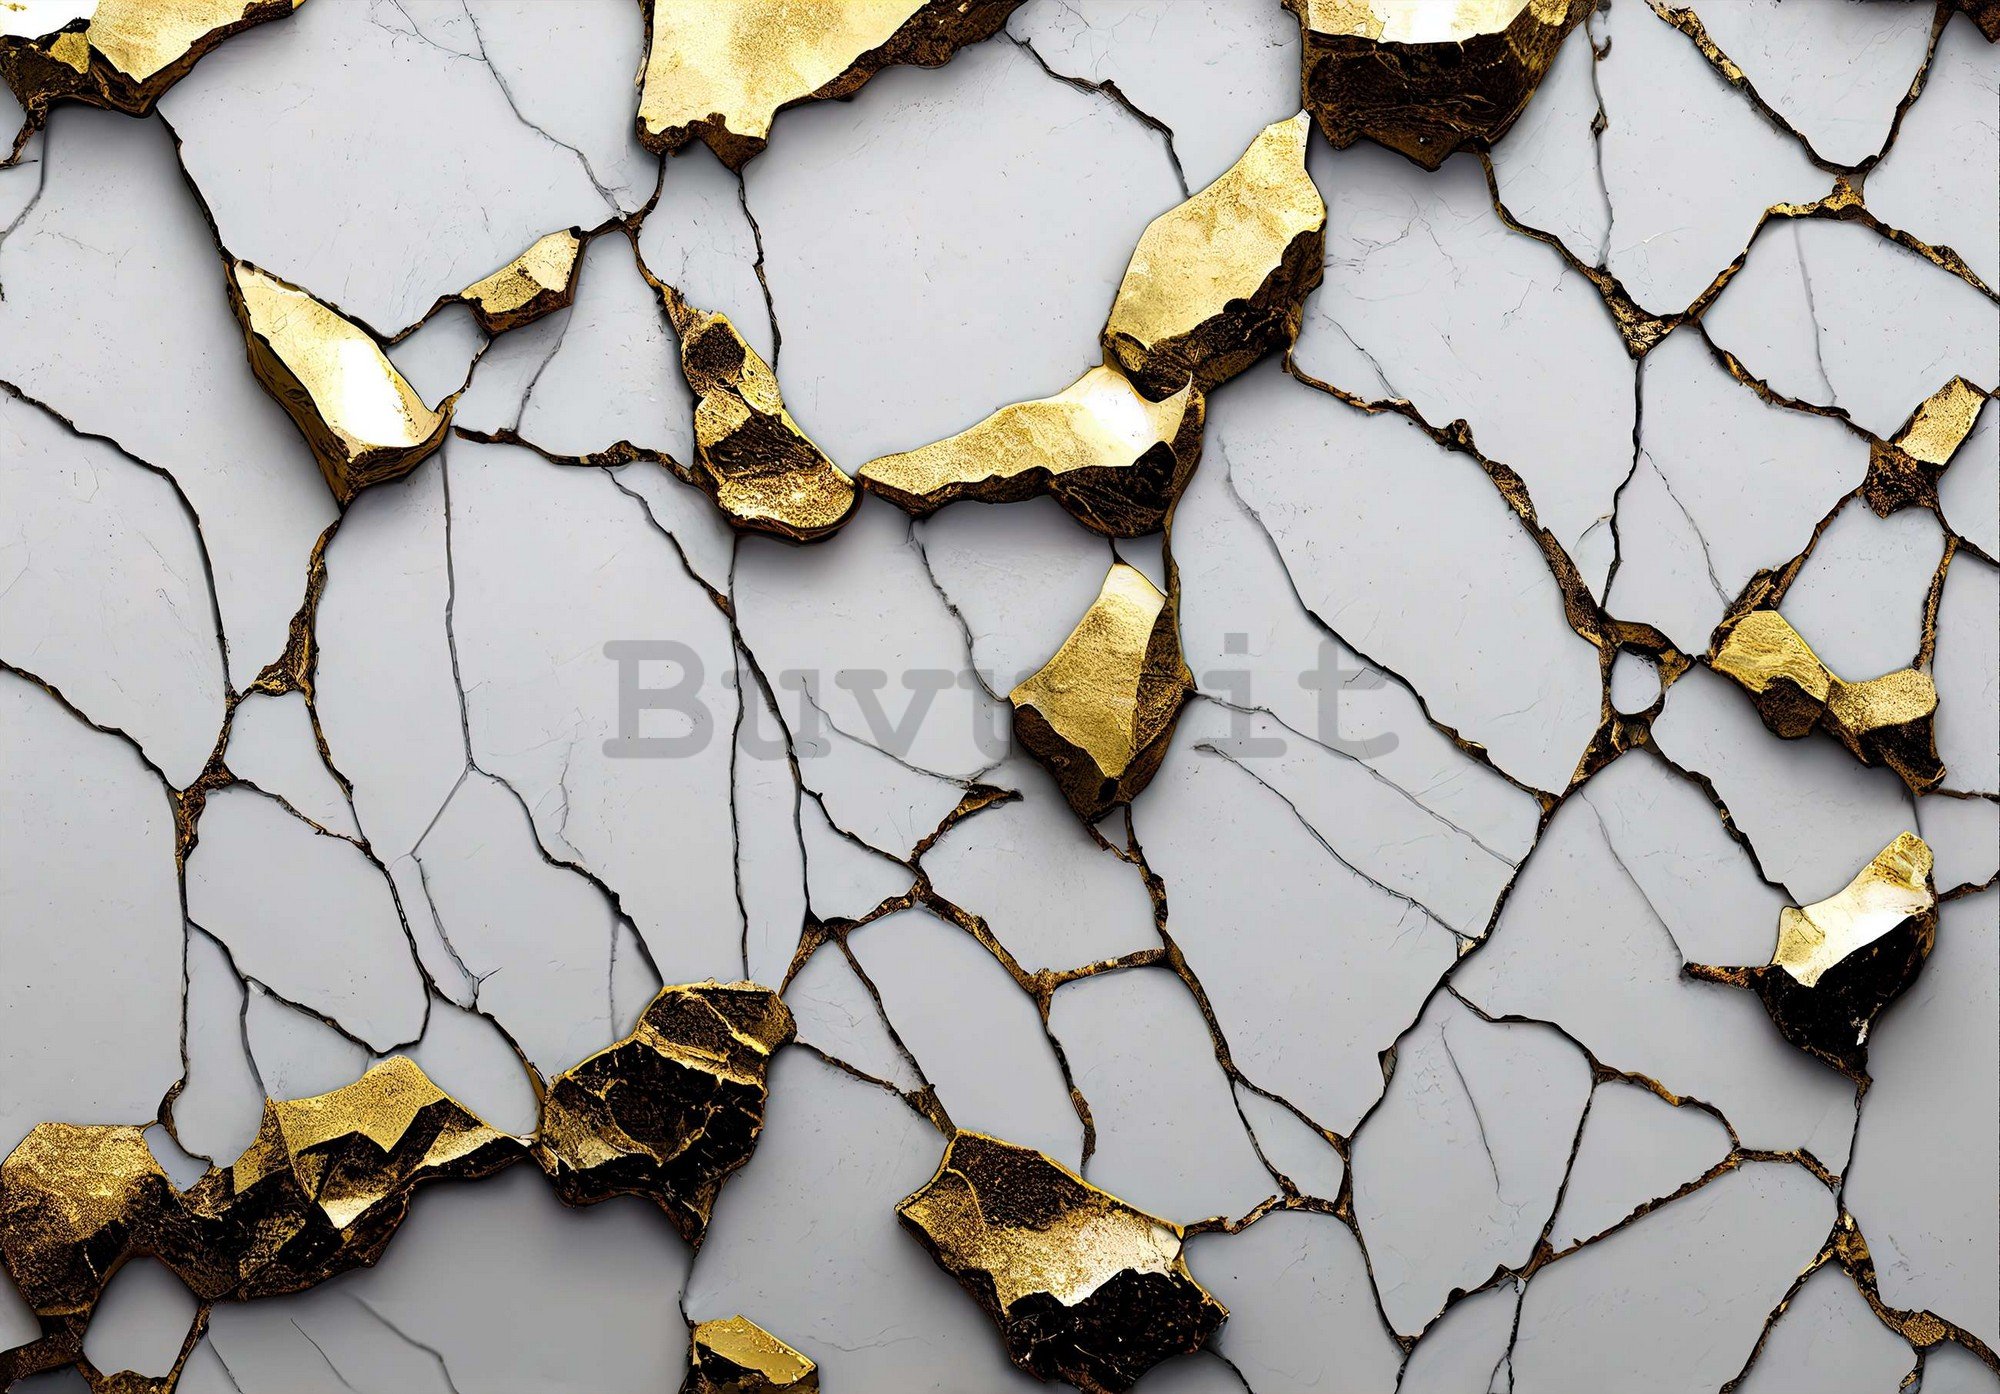 Fotomurale in TNT: Imitazione glamour del marmo dorato con parete bianca - 368x254 cm